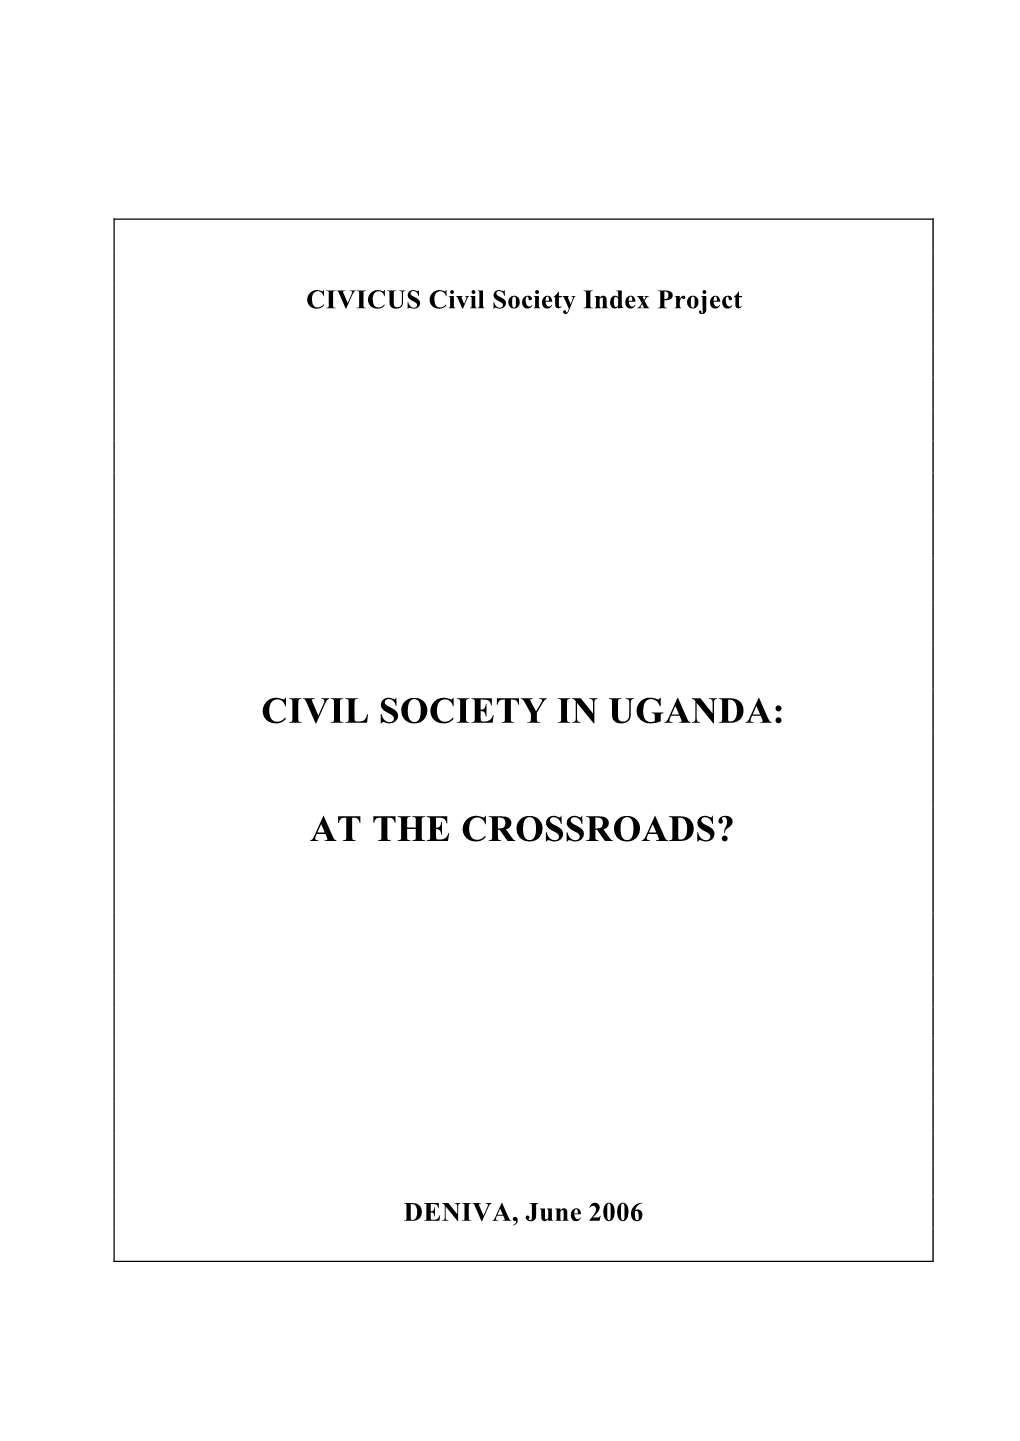 Civil Society in Uganda: at the Crossroads?